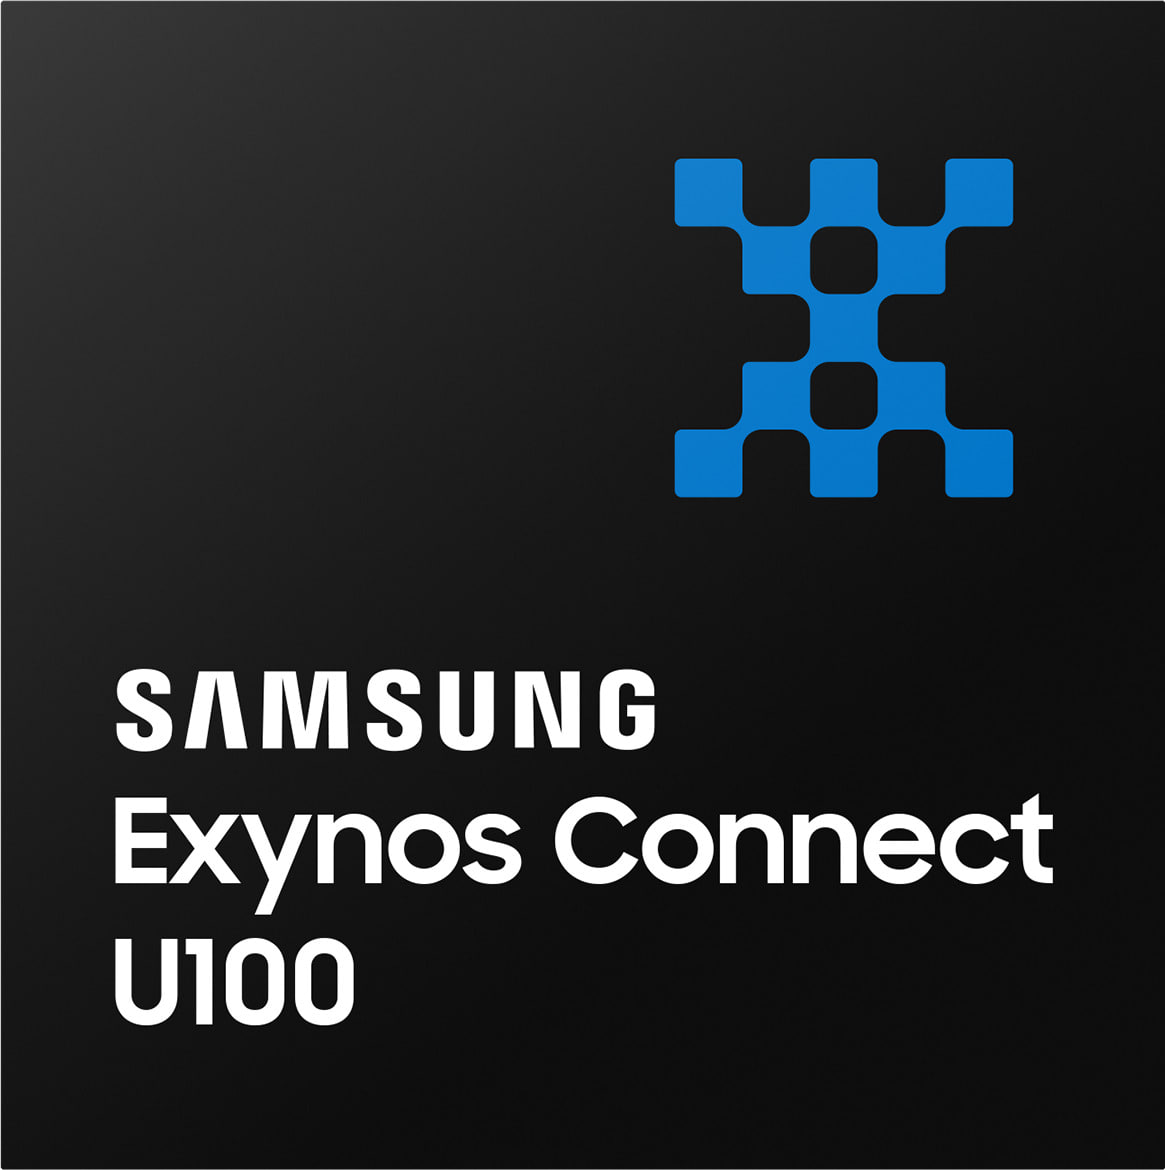 Samsung Exynos Connect U100